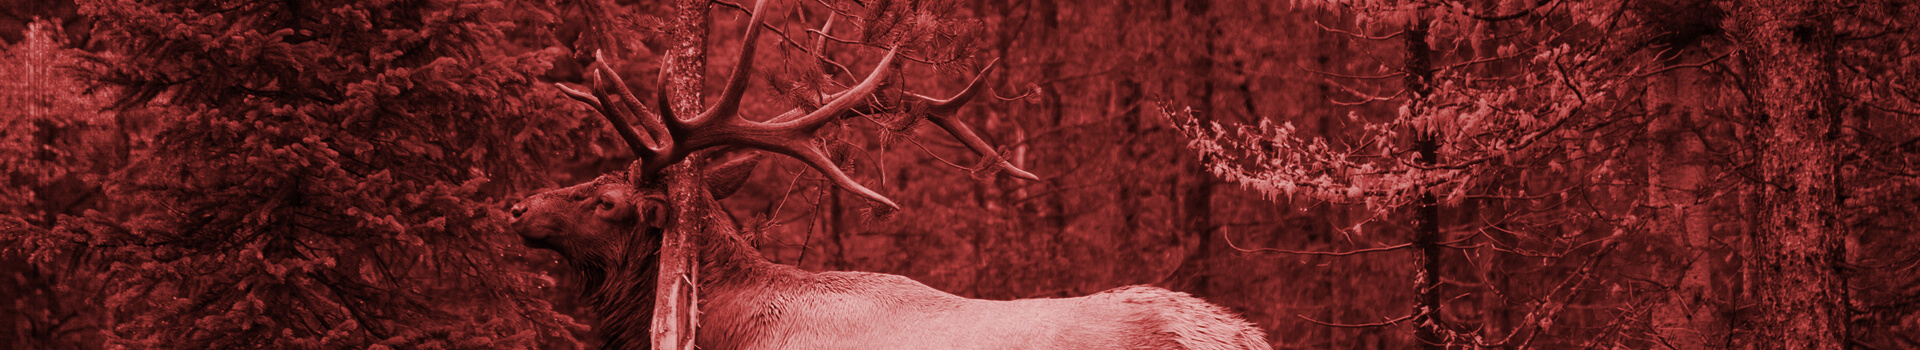 Our Elk Hunts